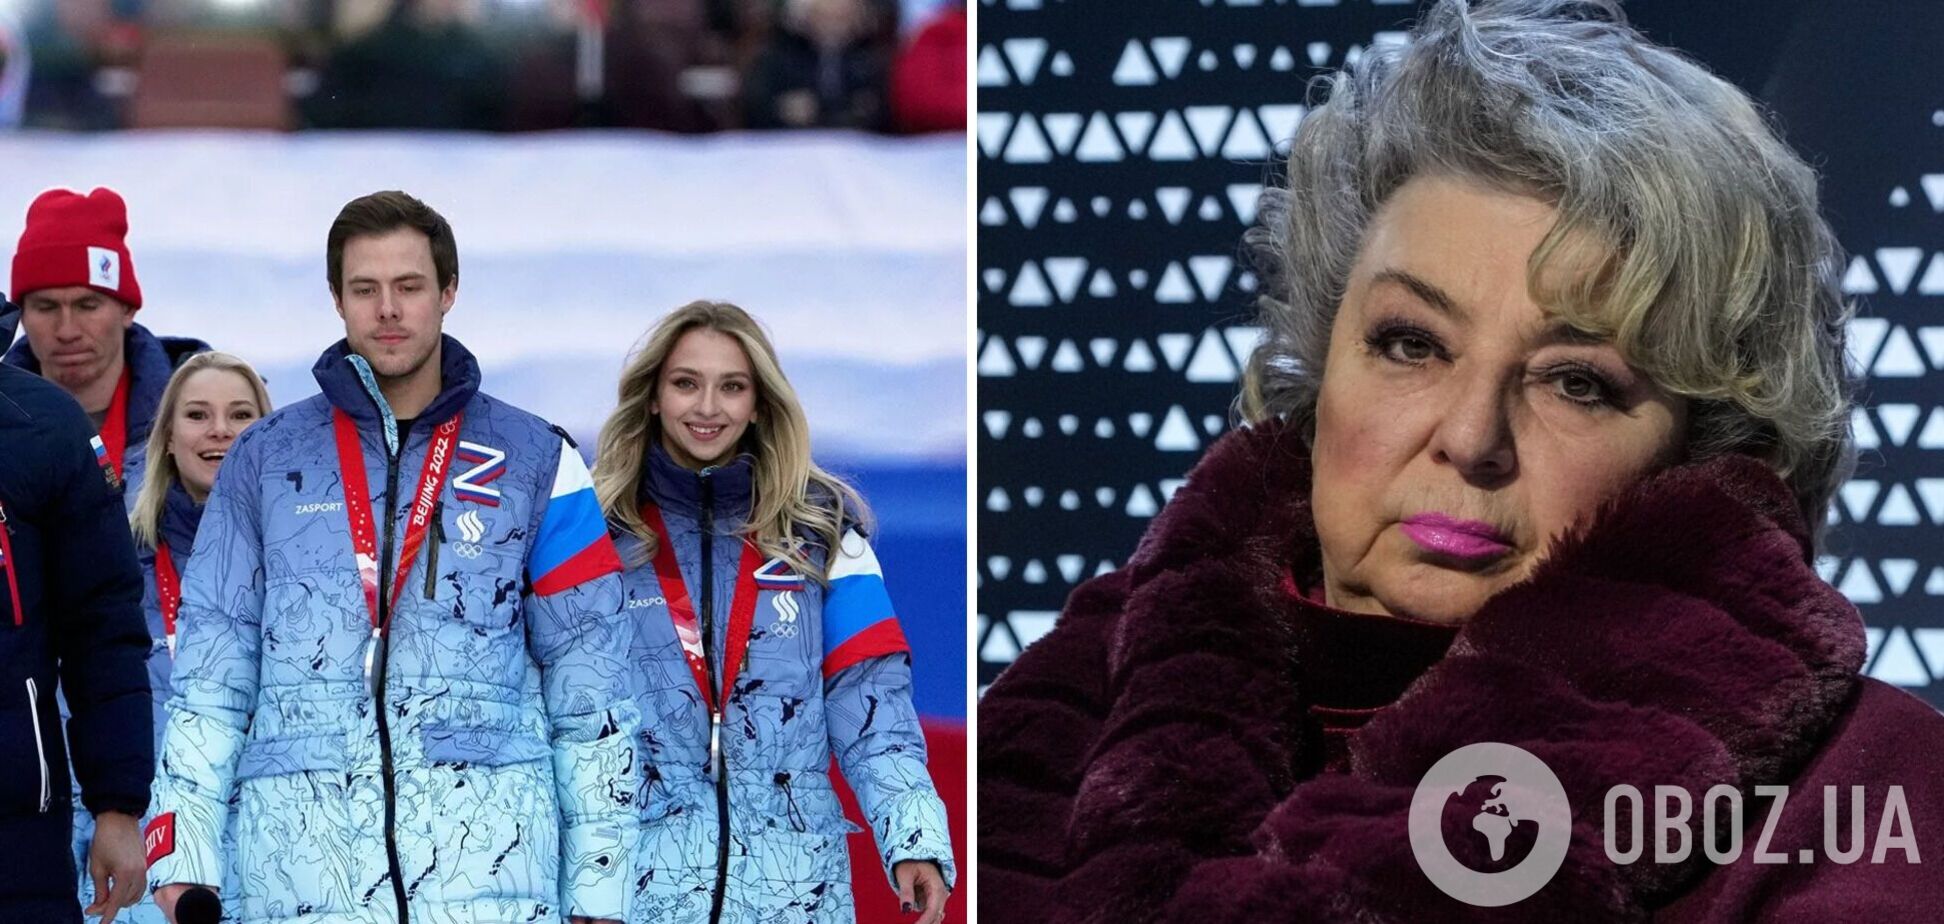 'Вийдемо взагалі як звірі': у Росії показали справжнє обличчя через 'безнадійне відсторонення' від спорту